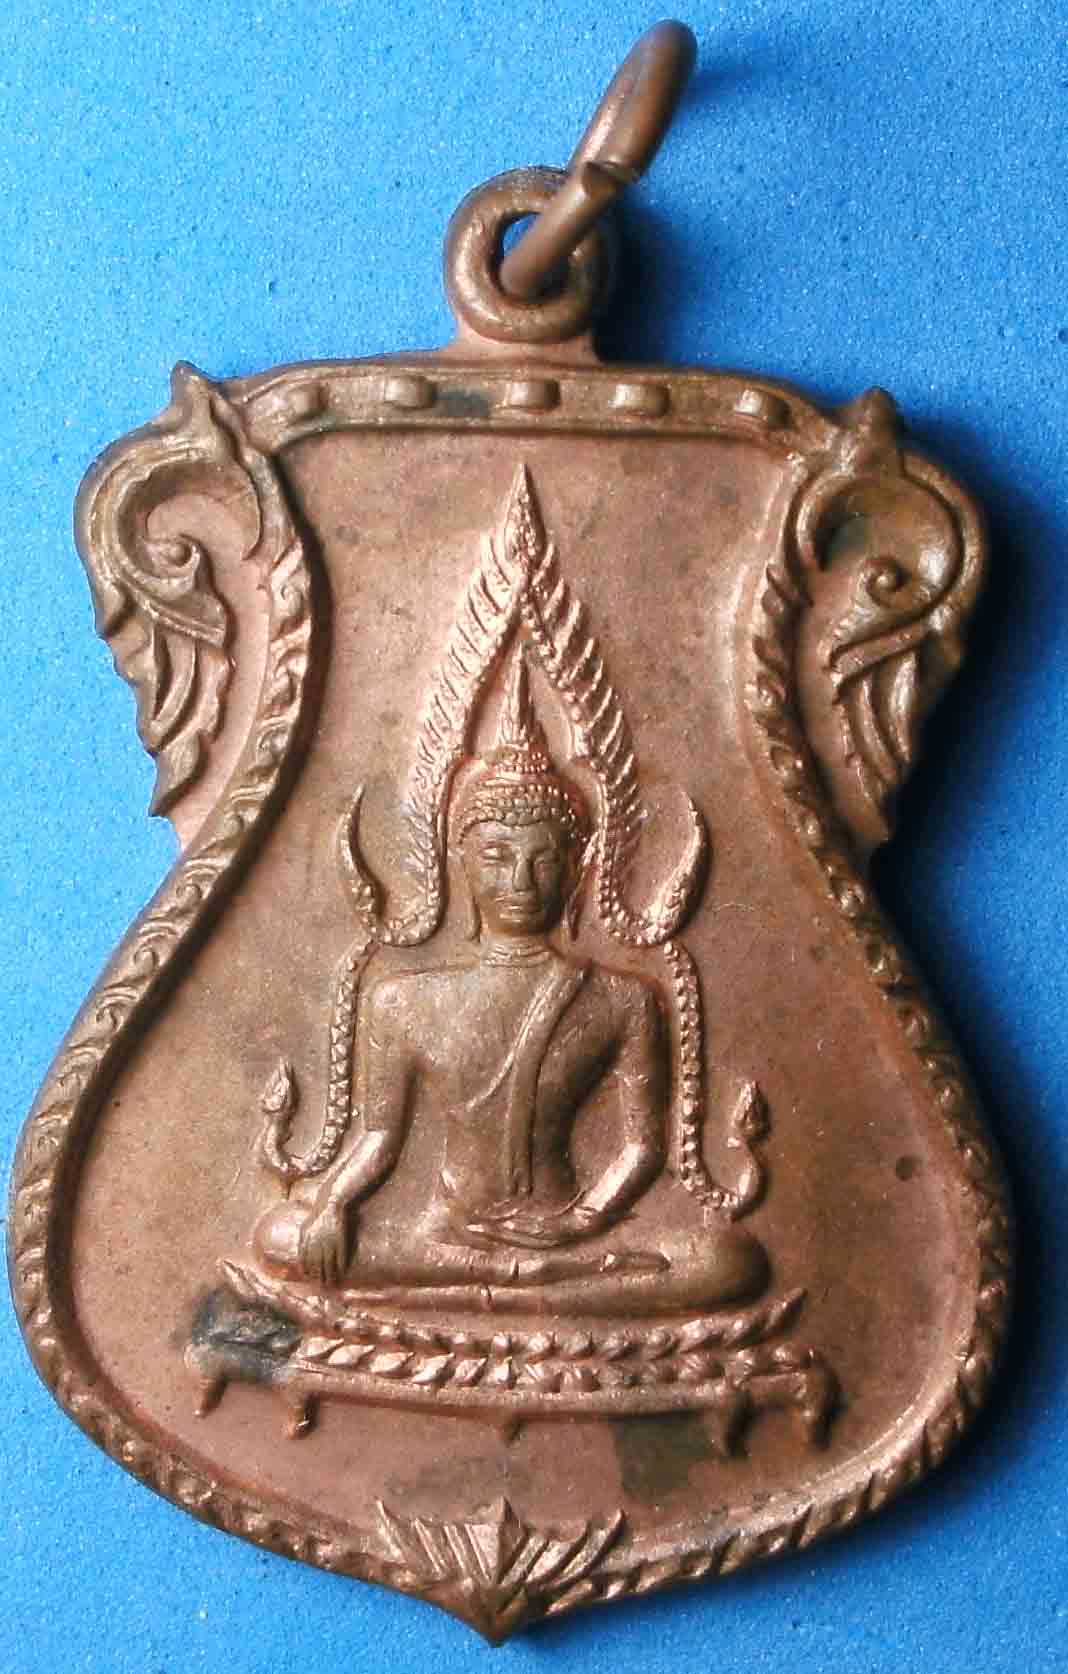 เหรียญพระพุทธชินราช ปี17 สวยเดิม หลวงพ่อเกษมปลุกเสก พิเศษสุดๆ องค์นี้ผิวไฟ หายาก